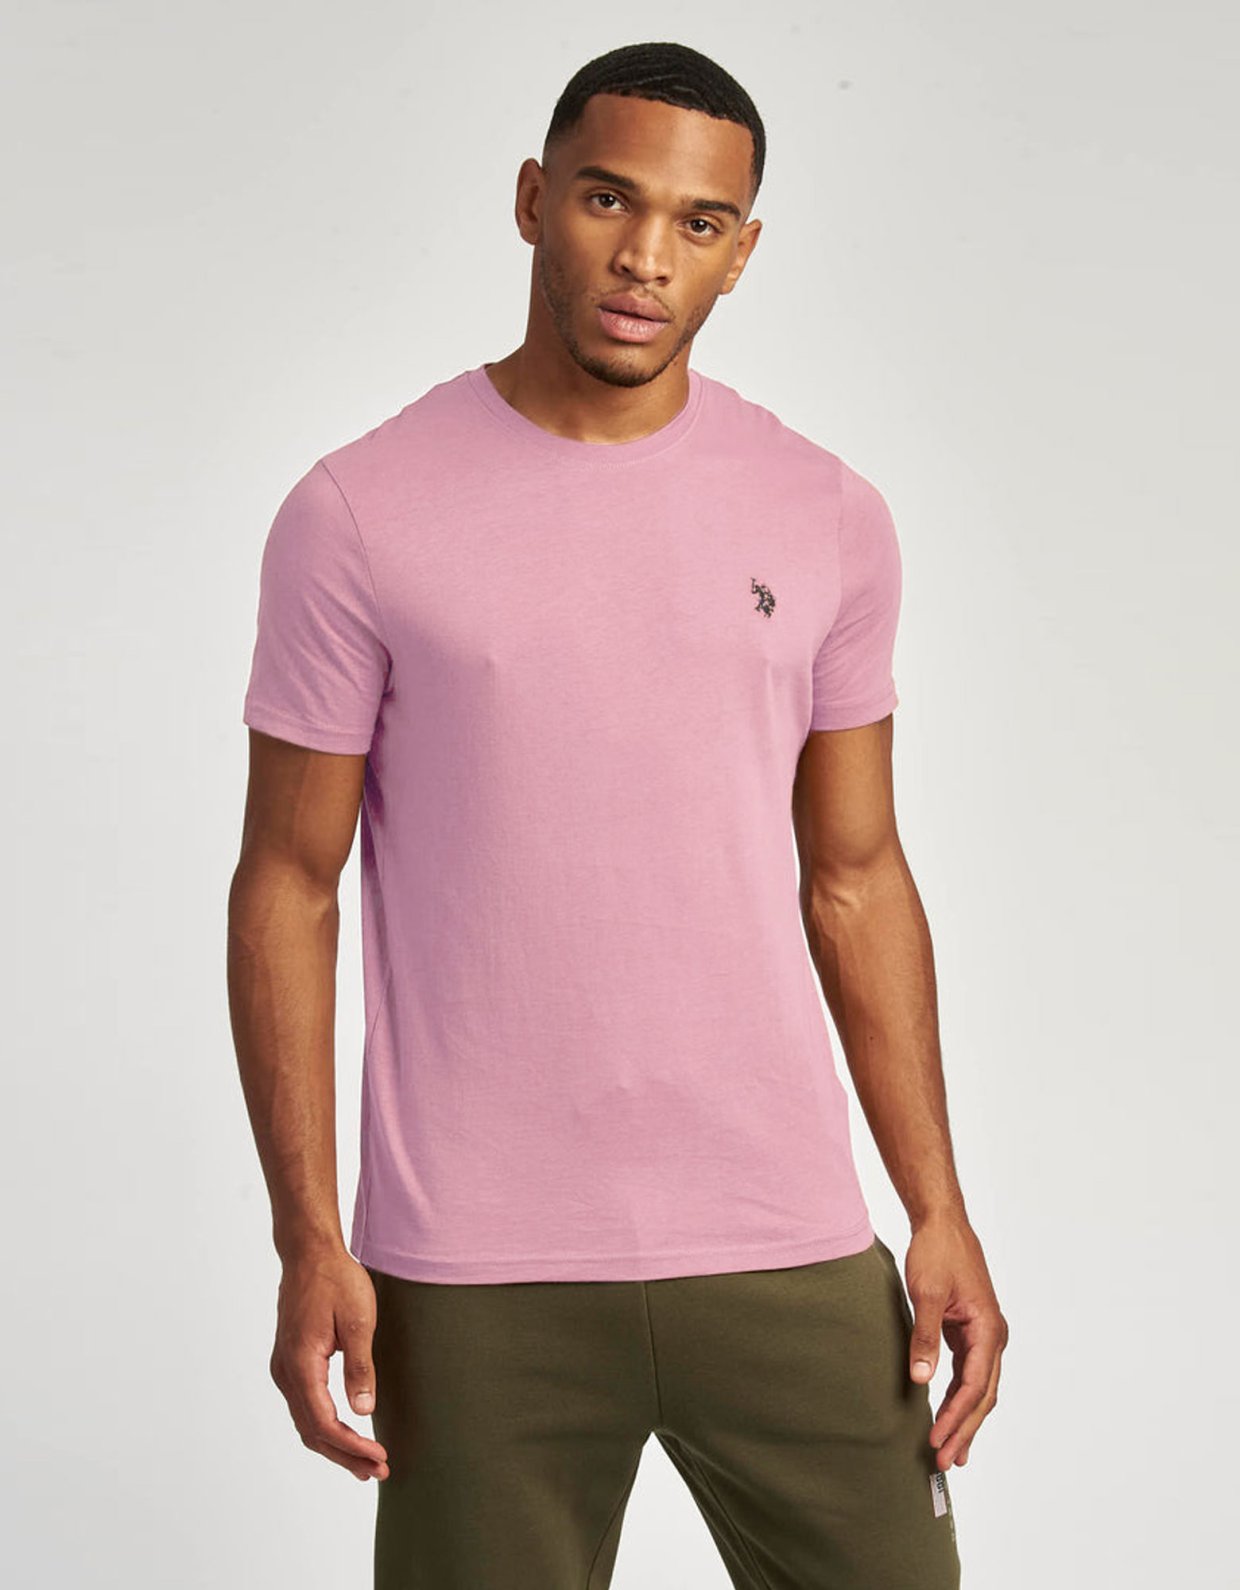 U.S Polo ASSN T-shirt light pink